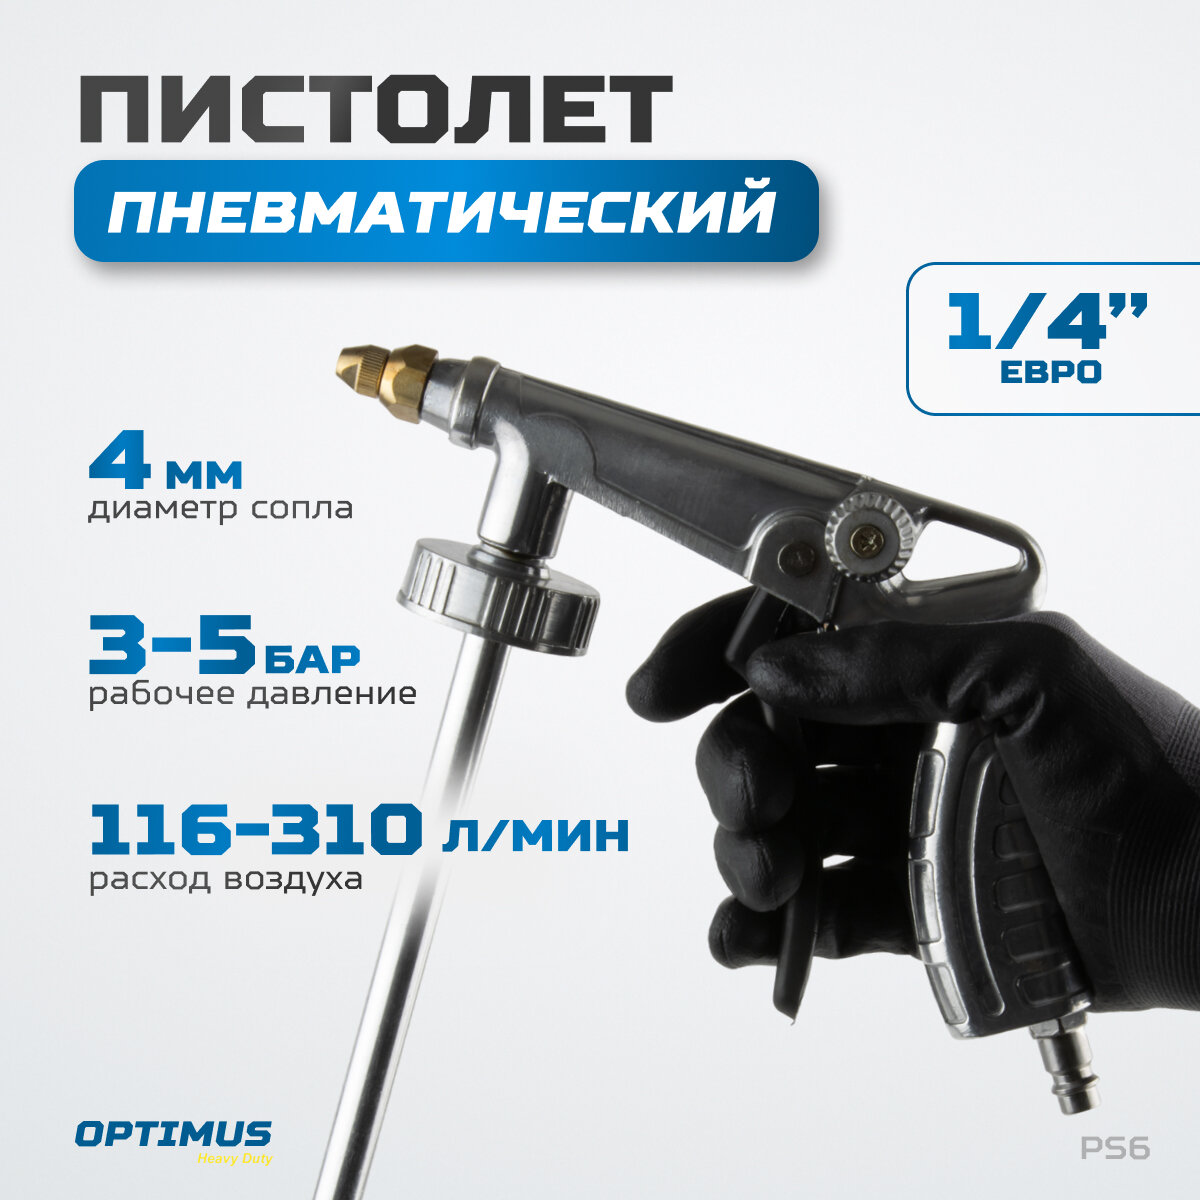 Пистолет пневматический для защитных составов под евробаллон OPTIMUS HD PS6